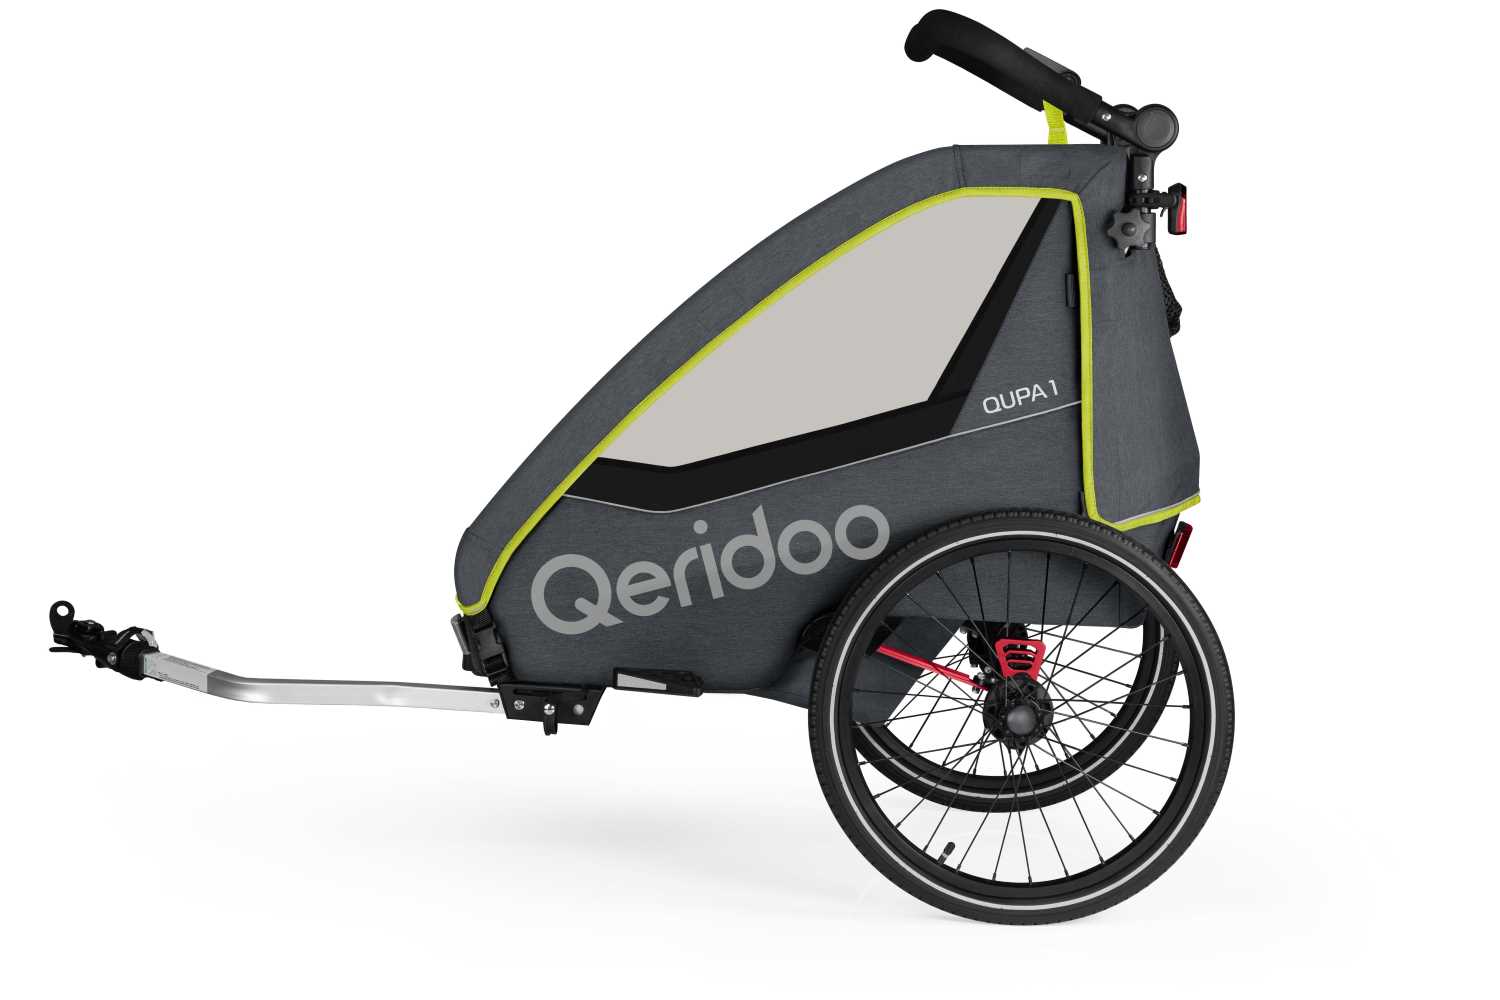 Produktbild von Qeridoo Qupa 1 (2023), grau (Q-QUP1-23-LI), Einsitzer Kinderfahrradanhänger mit Blattfeder Dämpfsystem